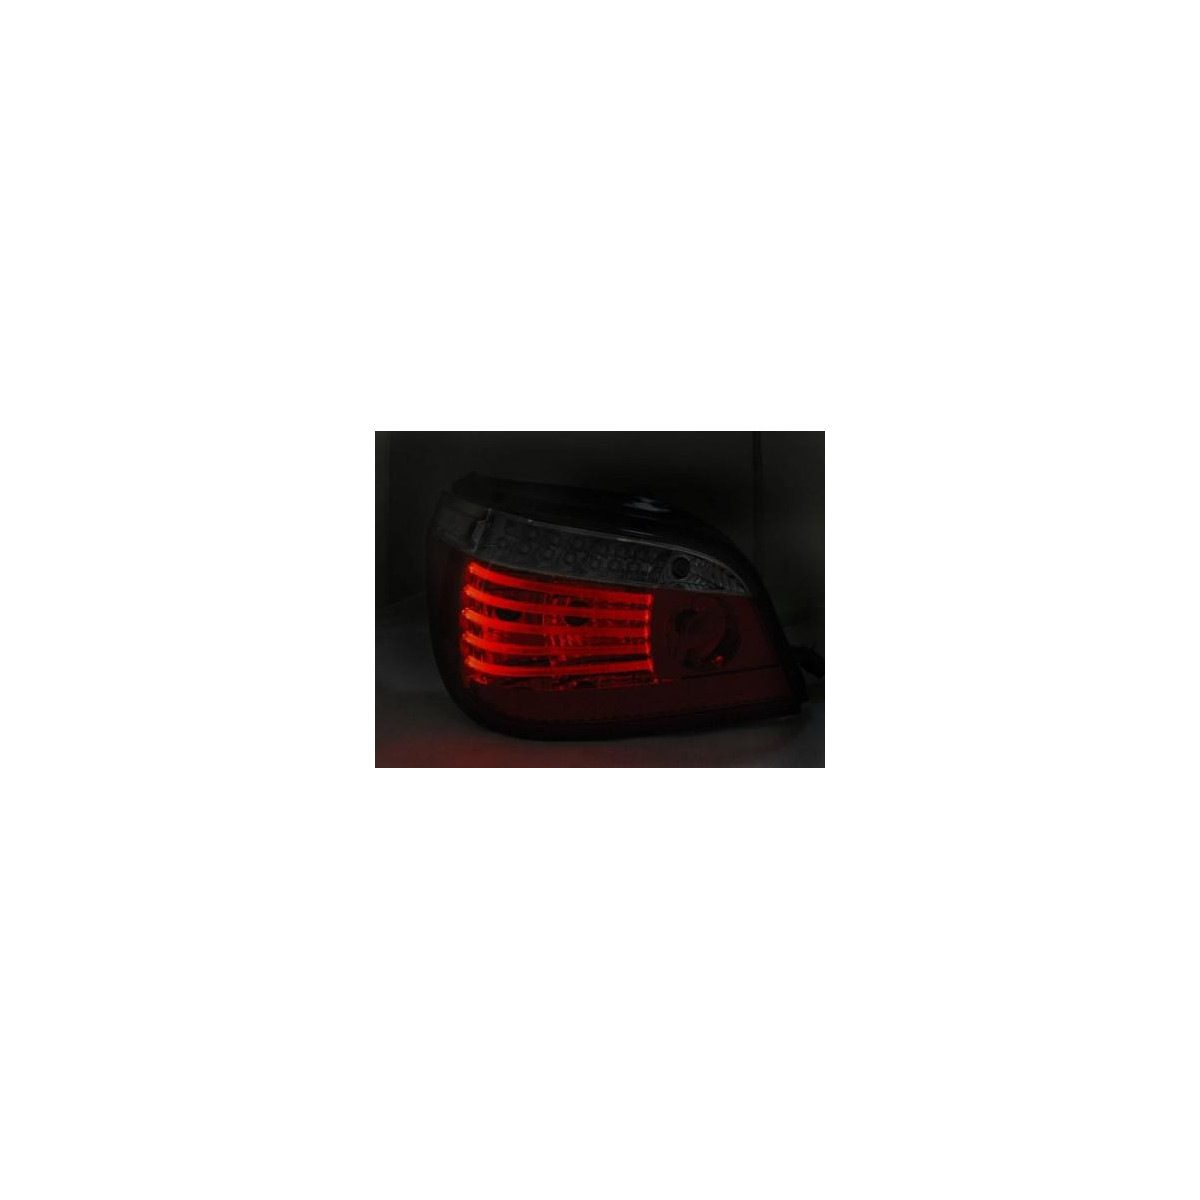 Edycja produktu "BMW E60 LCI 03.07-12.09 SMOKE LED SEQ